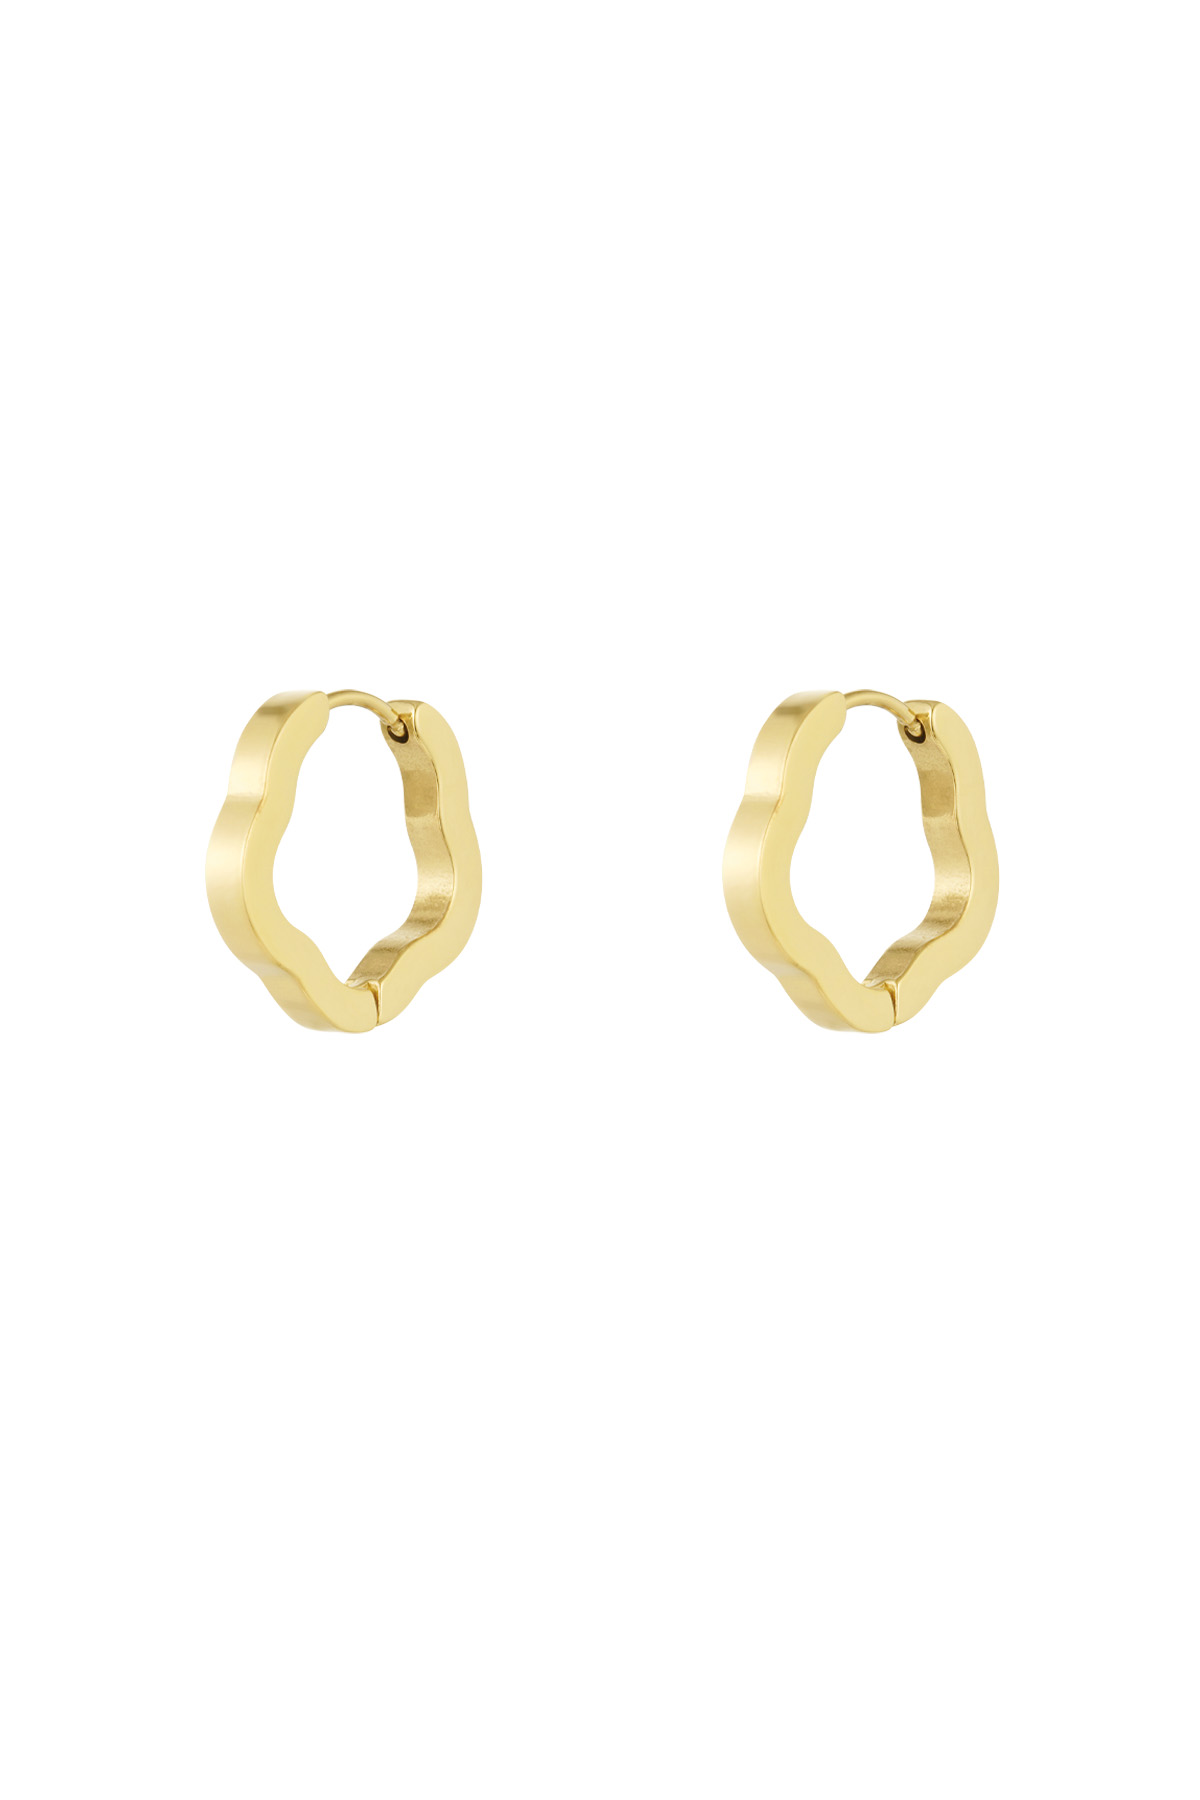 Einfache Ohrringe in Blumenform, mittelgroß – Gold 